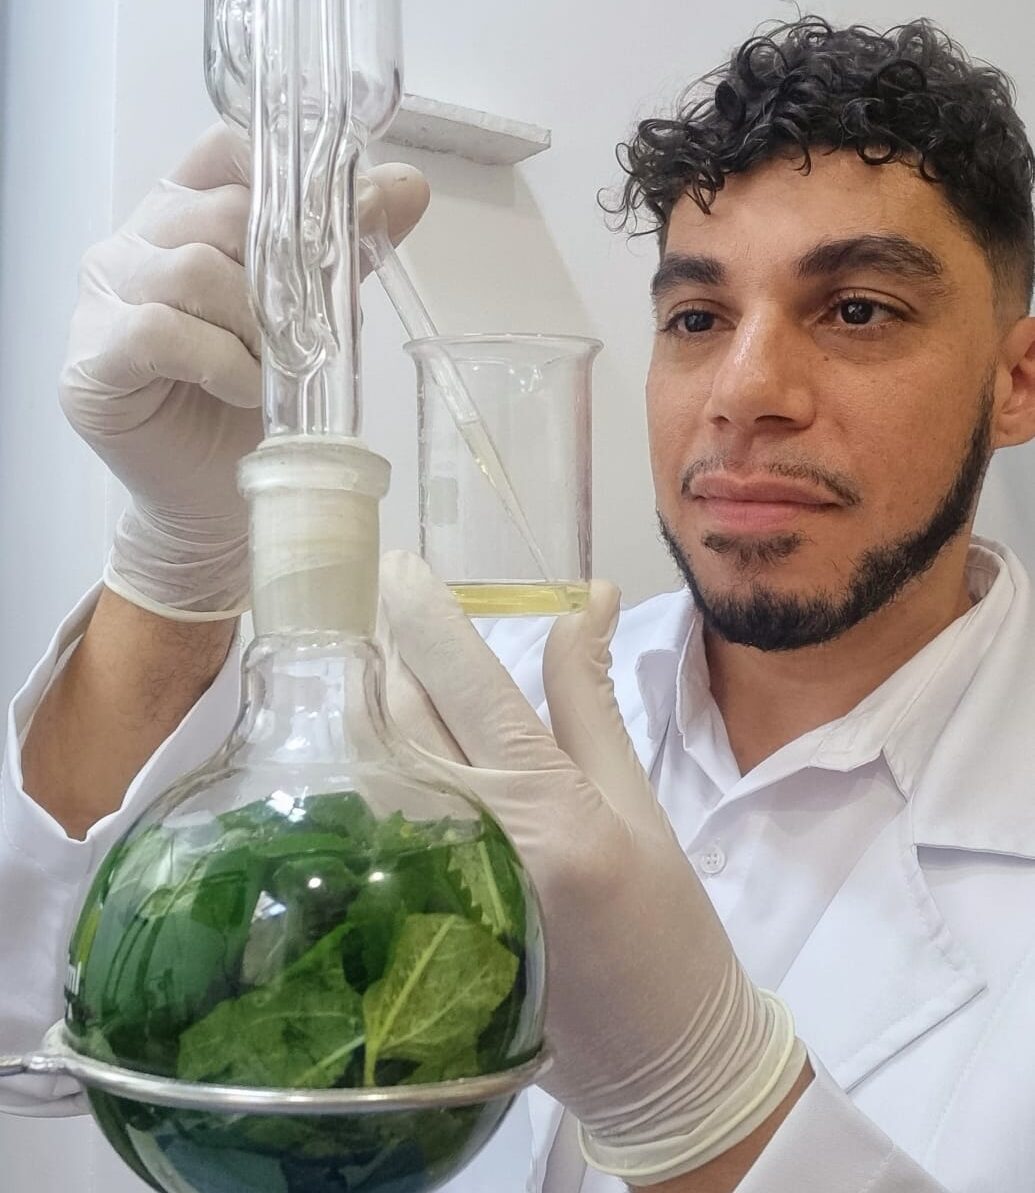 Projeto "Ciência no Horto" promoverá educação sobre plantas medicinais